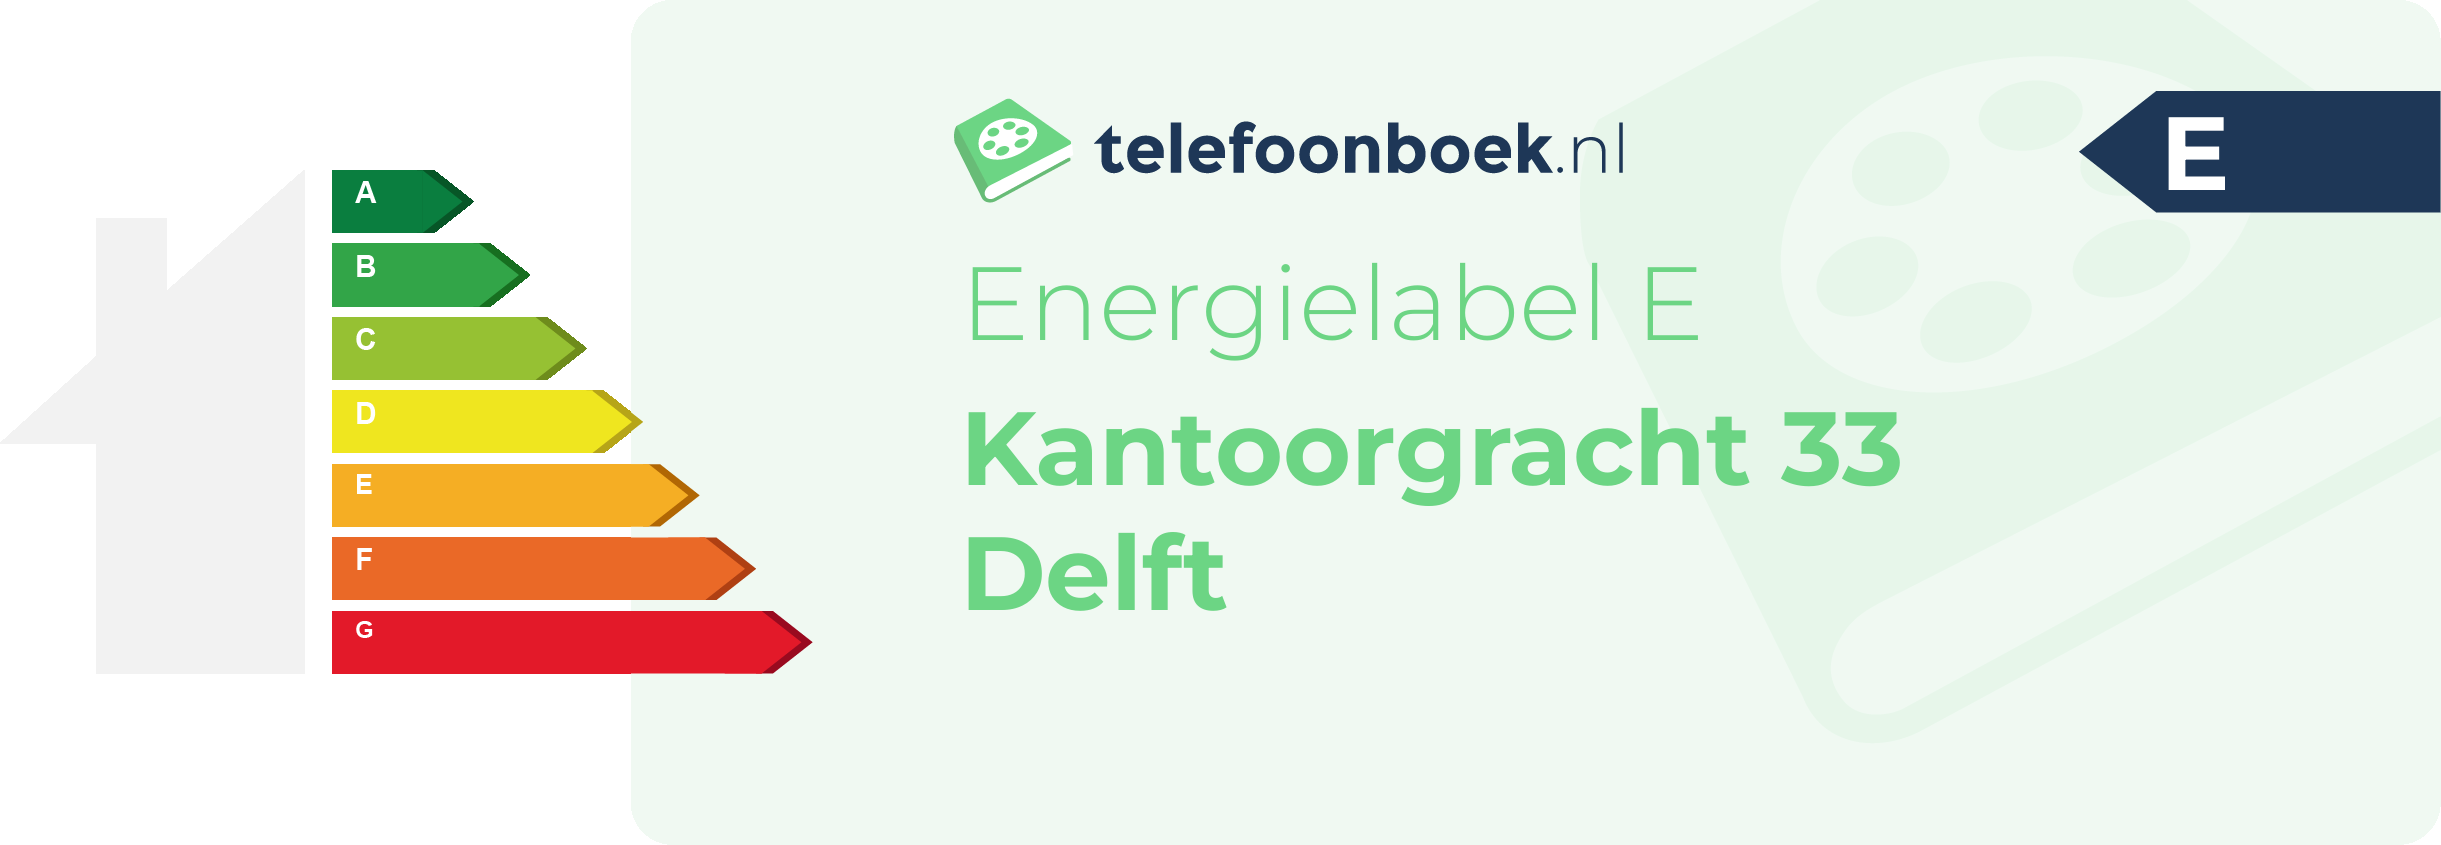 Energielabel Kantoorgracht 33 Delft